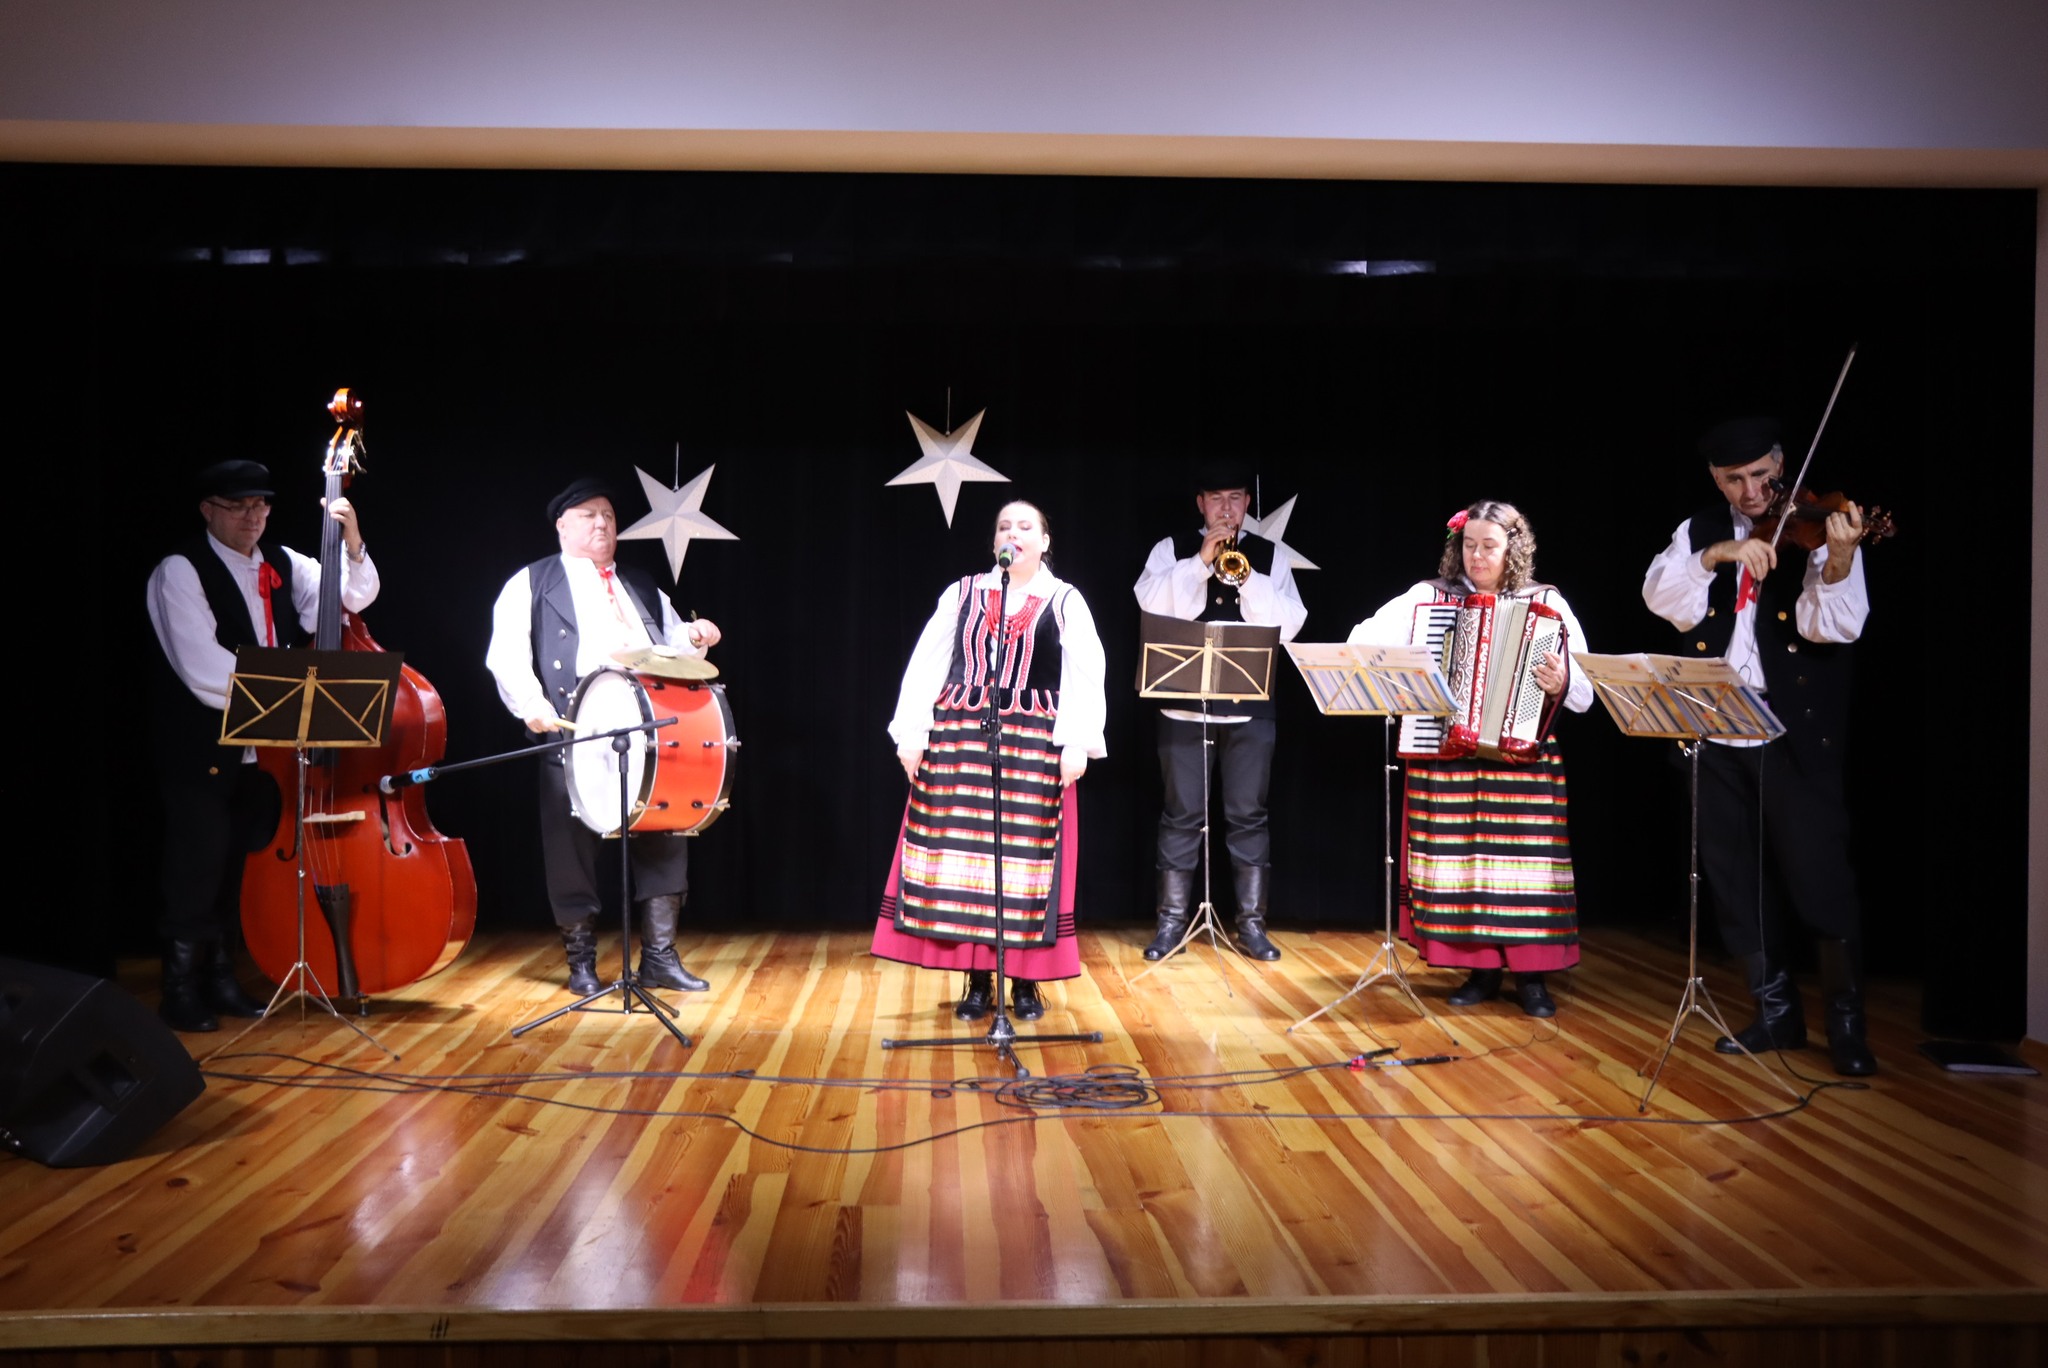 Na zdjęciu sześcioro członków zespołu w strojach ludowych występujących na scenie. Zespół składa się z wokalistki i pięciu muzyków grających na tradycyjnych ludowych instrumentach.